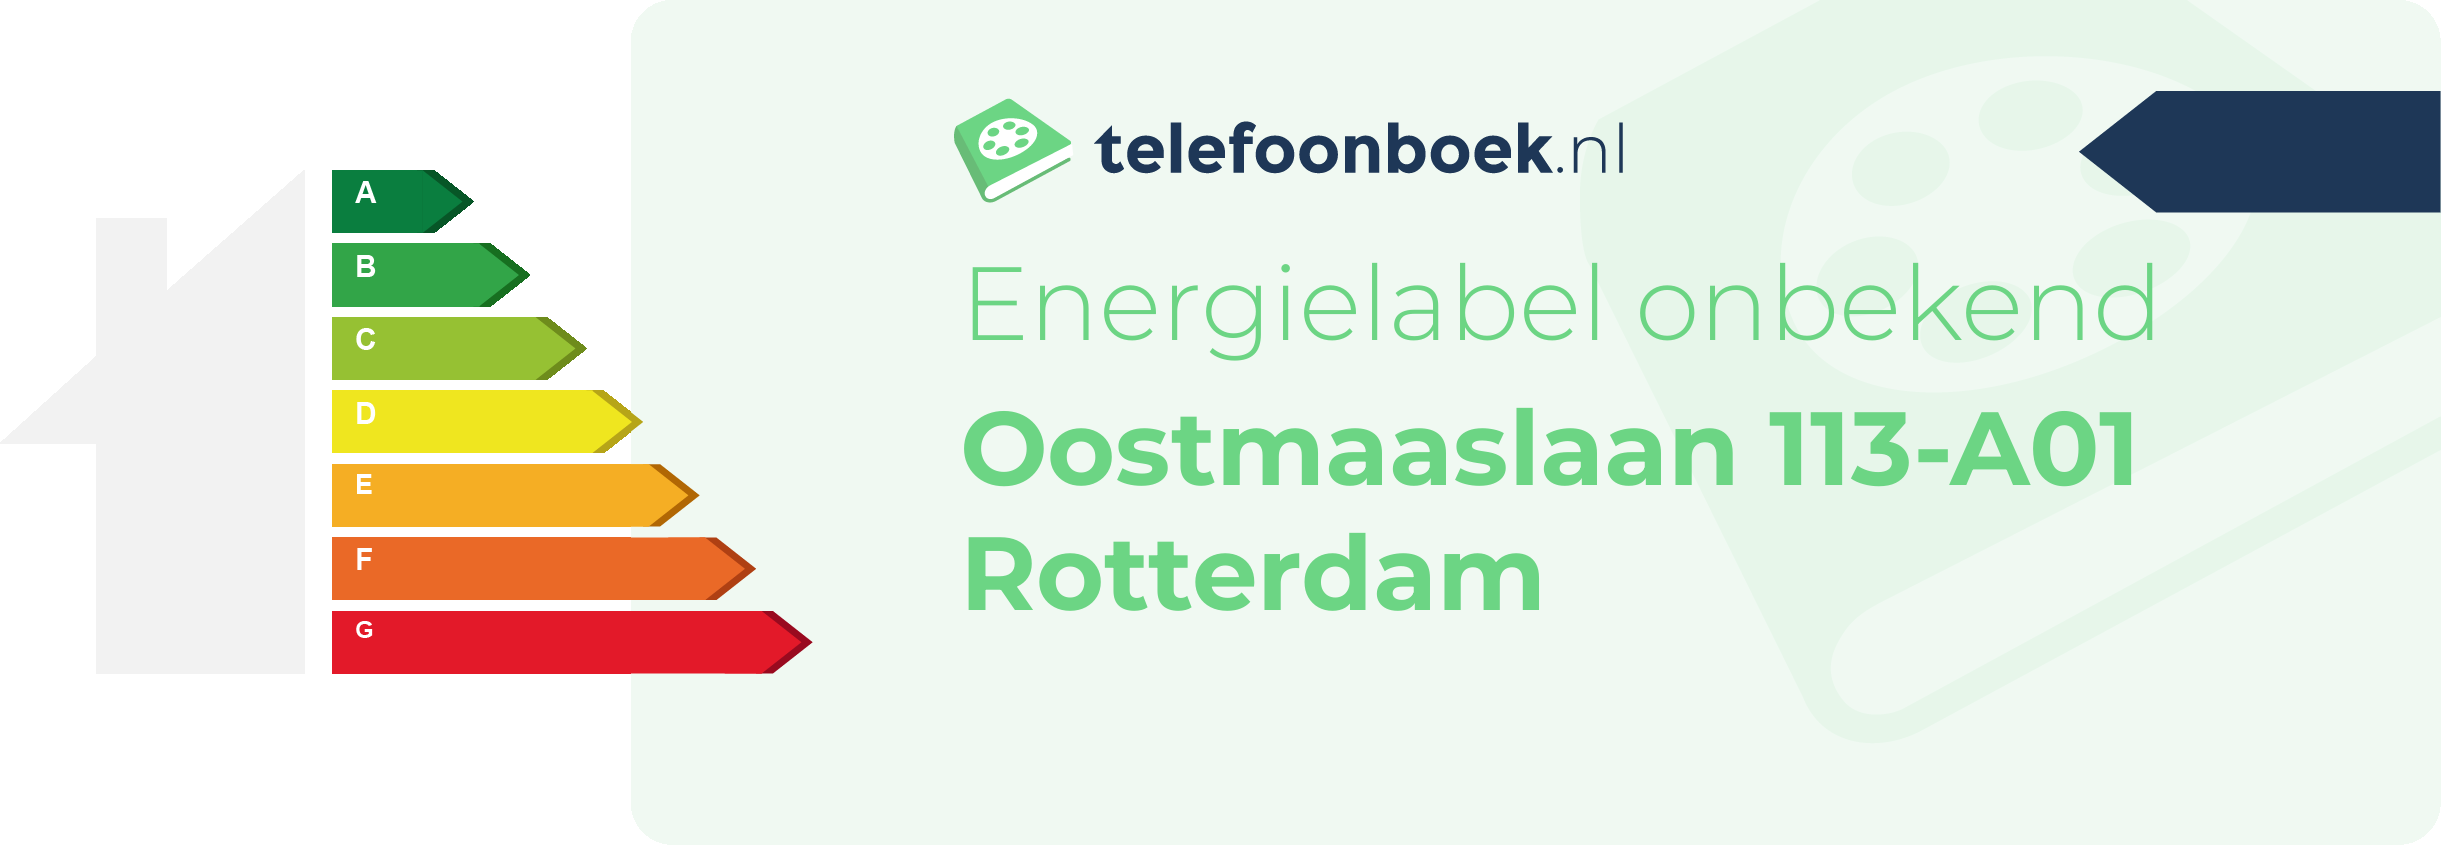 Energielabel Oostmaaslaan 113-A01 Rotterdam